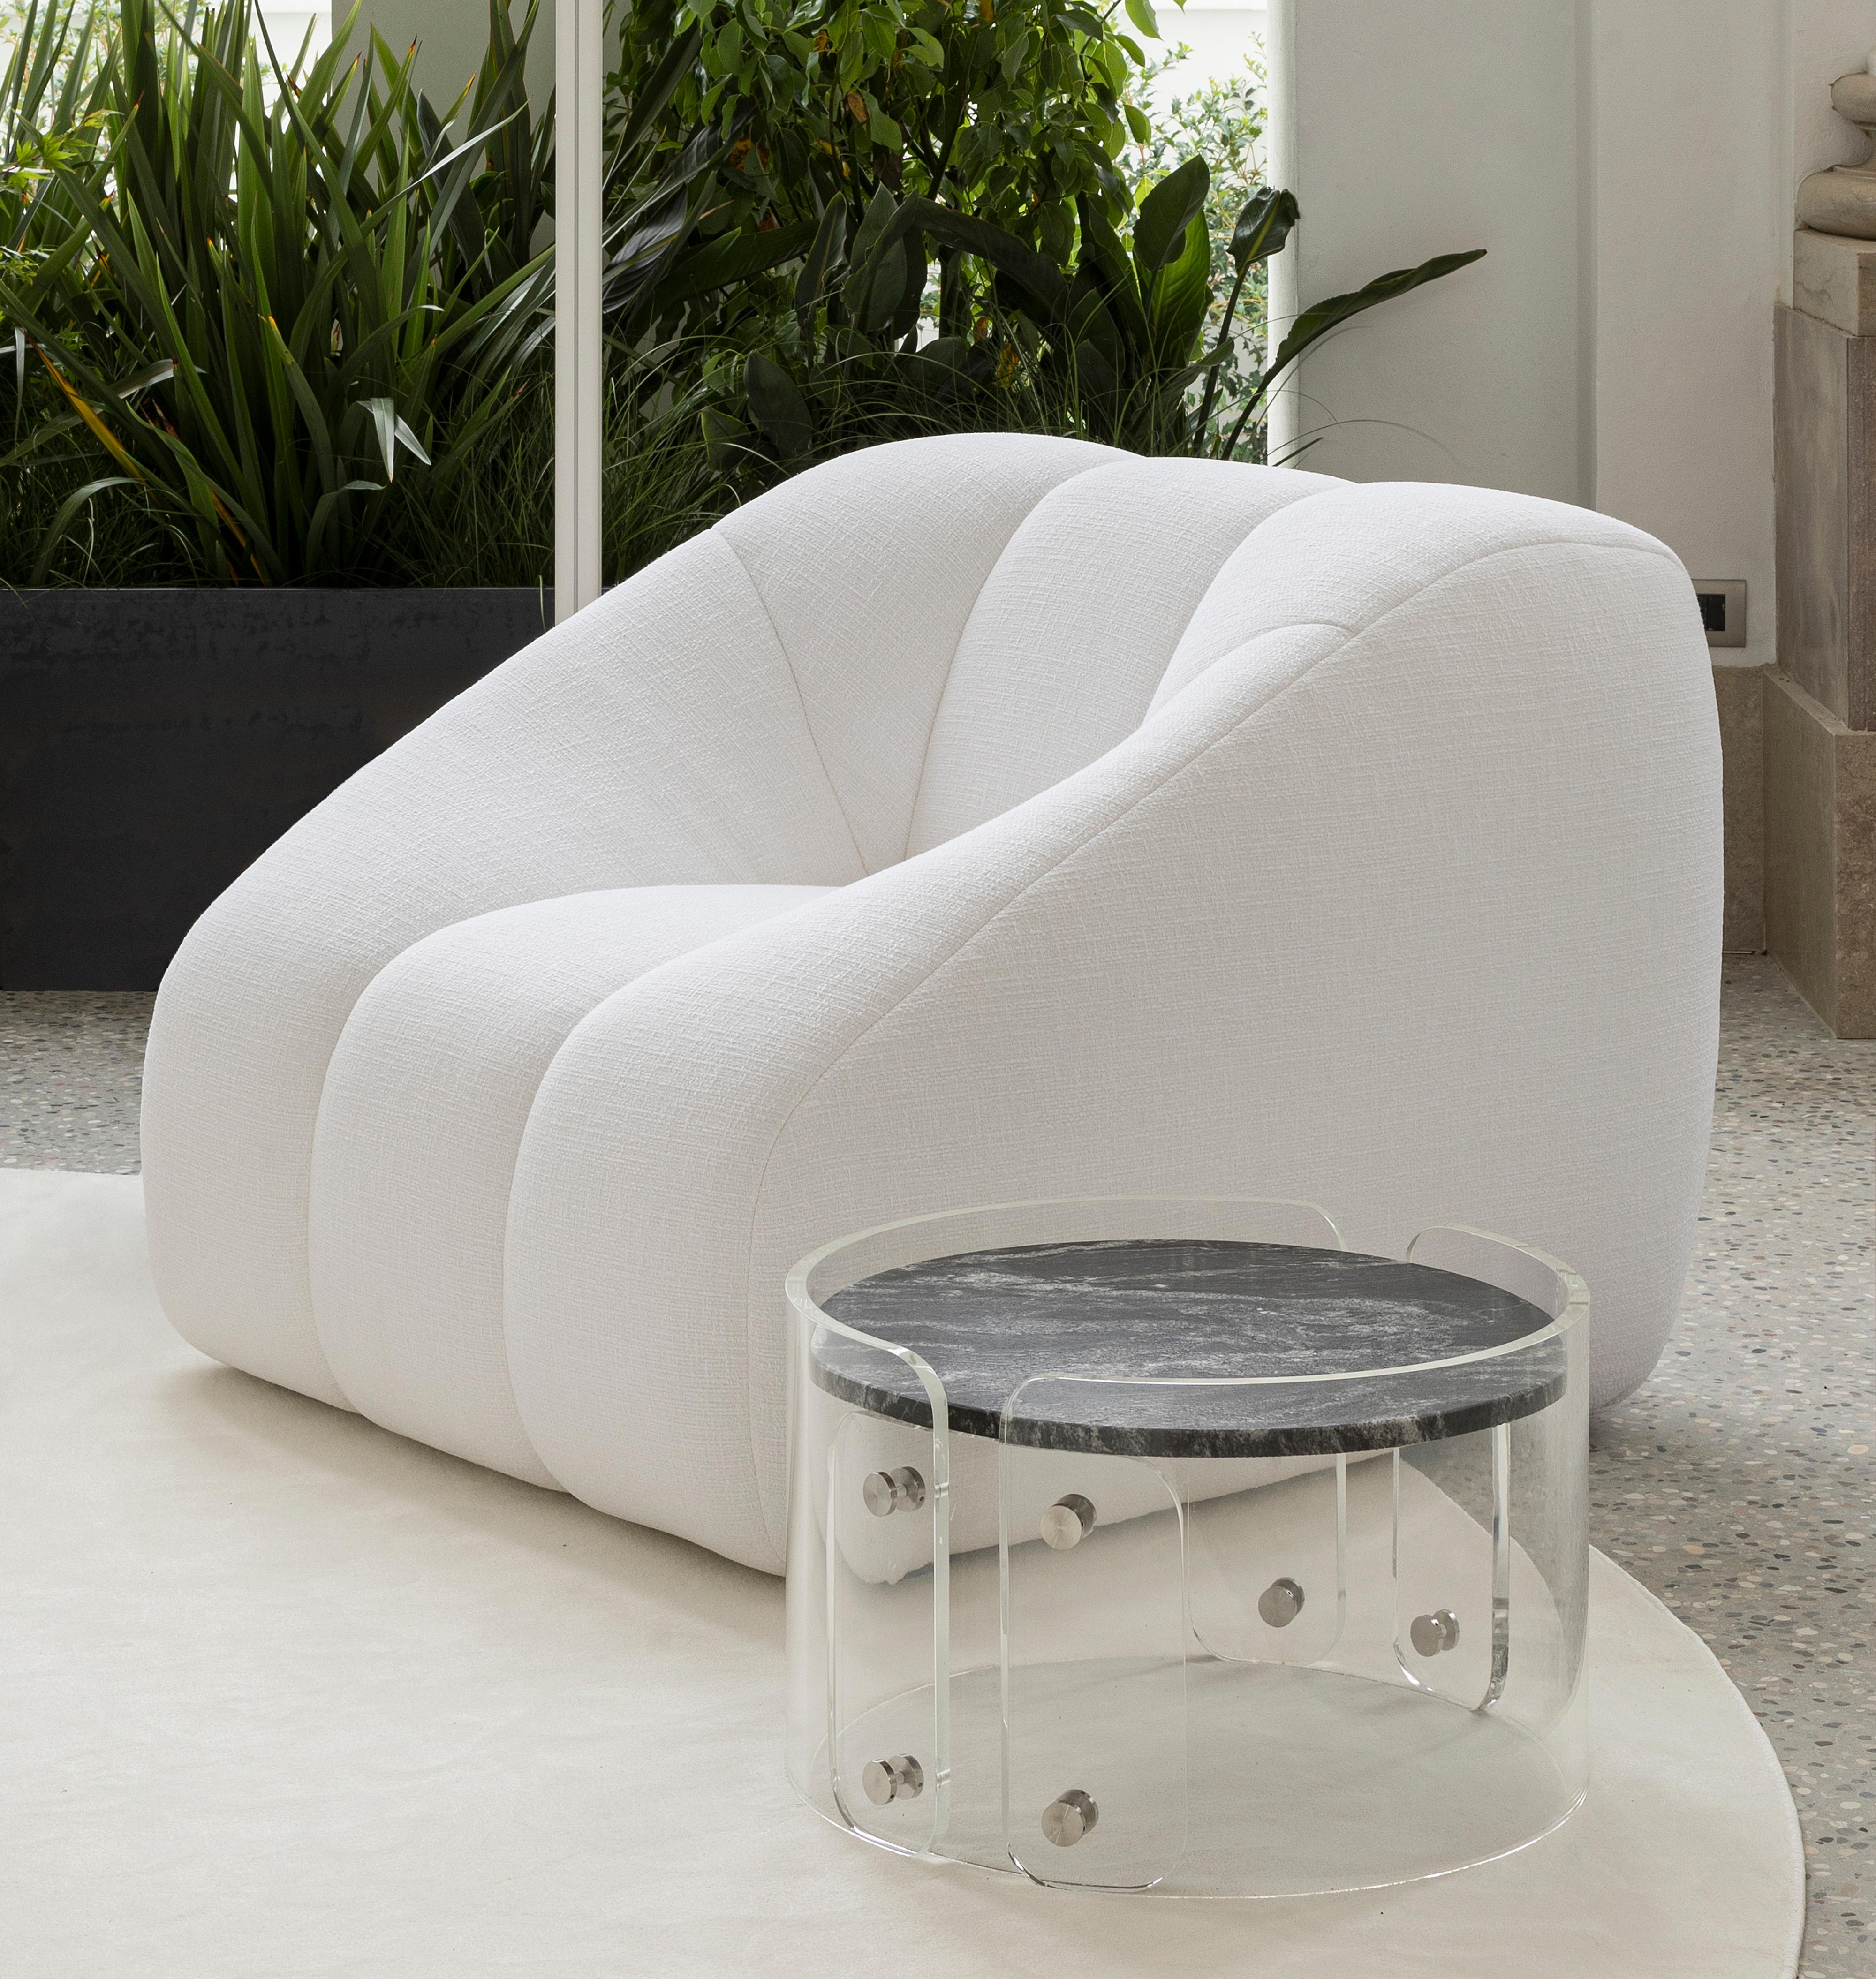 Conçue par le designer brésilien Ricardo Antonio, la table basse Lassù se distingue par la simplicité avec laquelle elle associe deux matériaux très différents : la pierre et le plexiglas. Le plateau est en granit noir beauty, un matériau riche dont